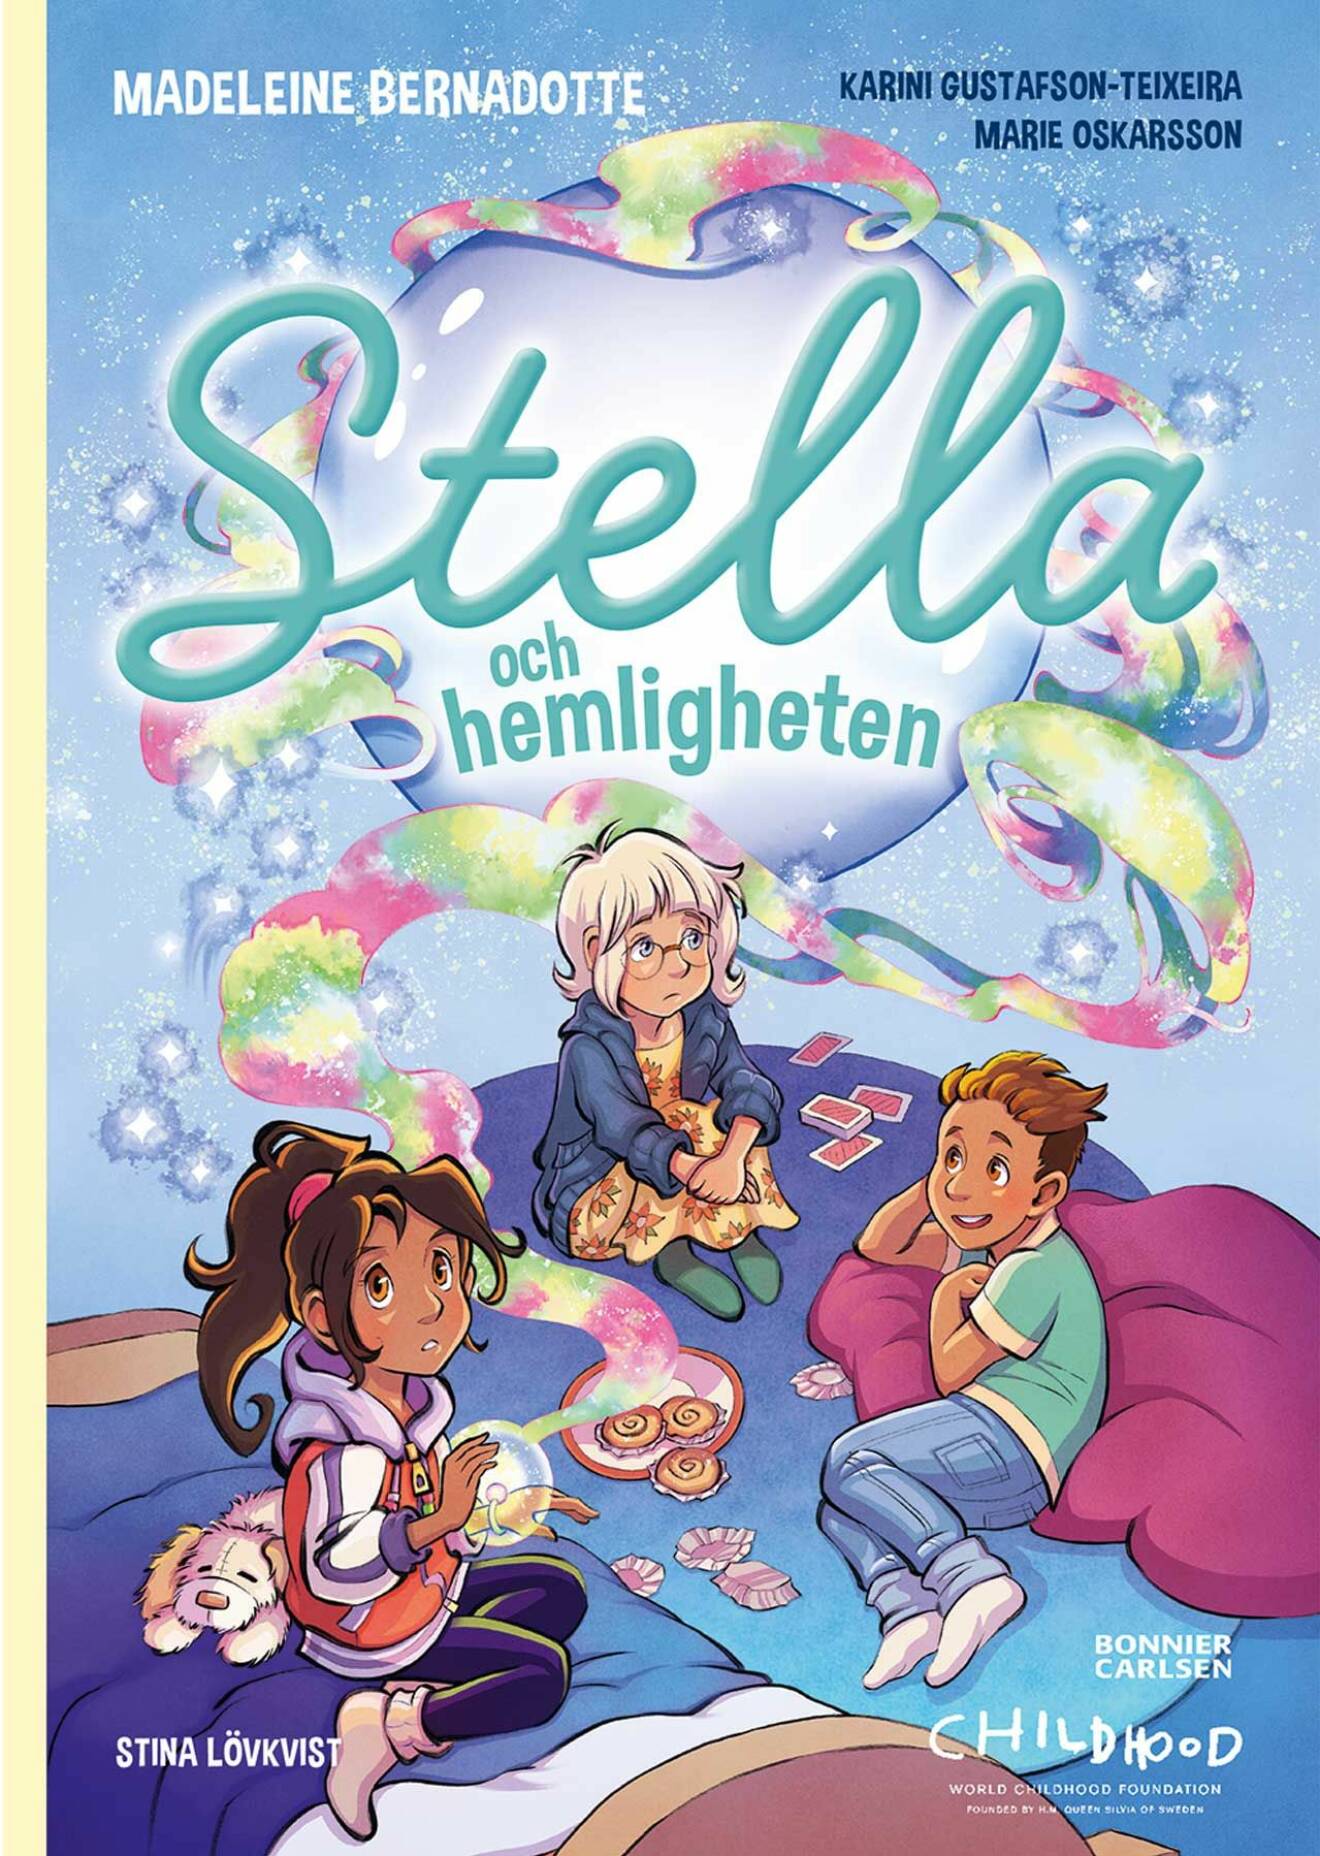 Madeleines barnbok Stella och hemligheten.